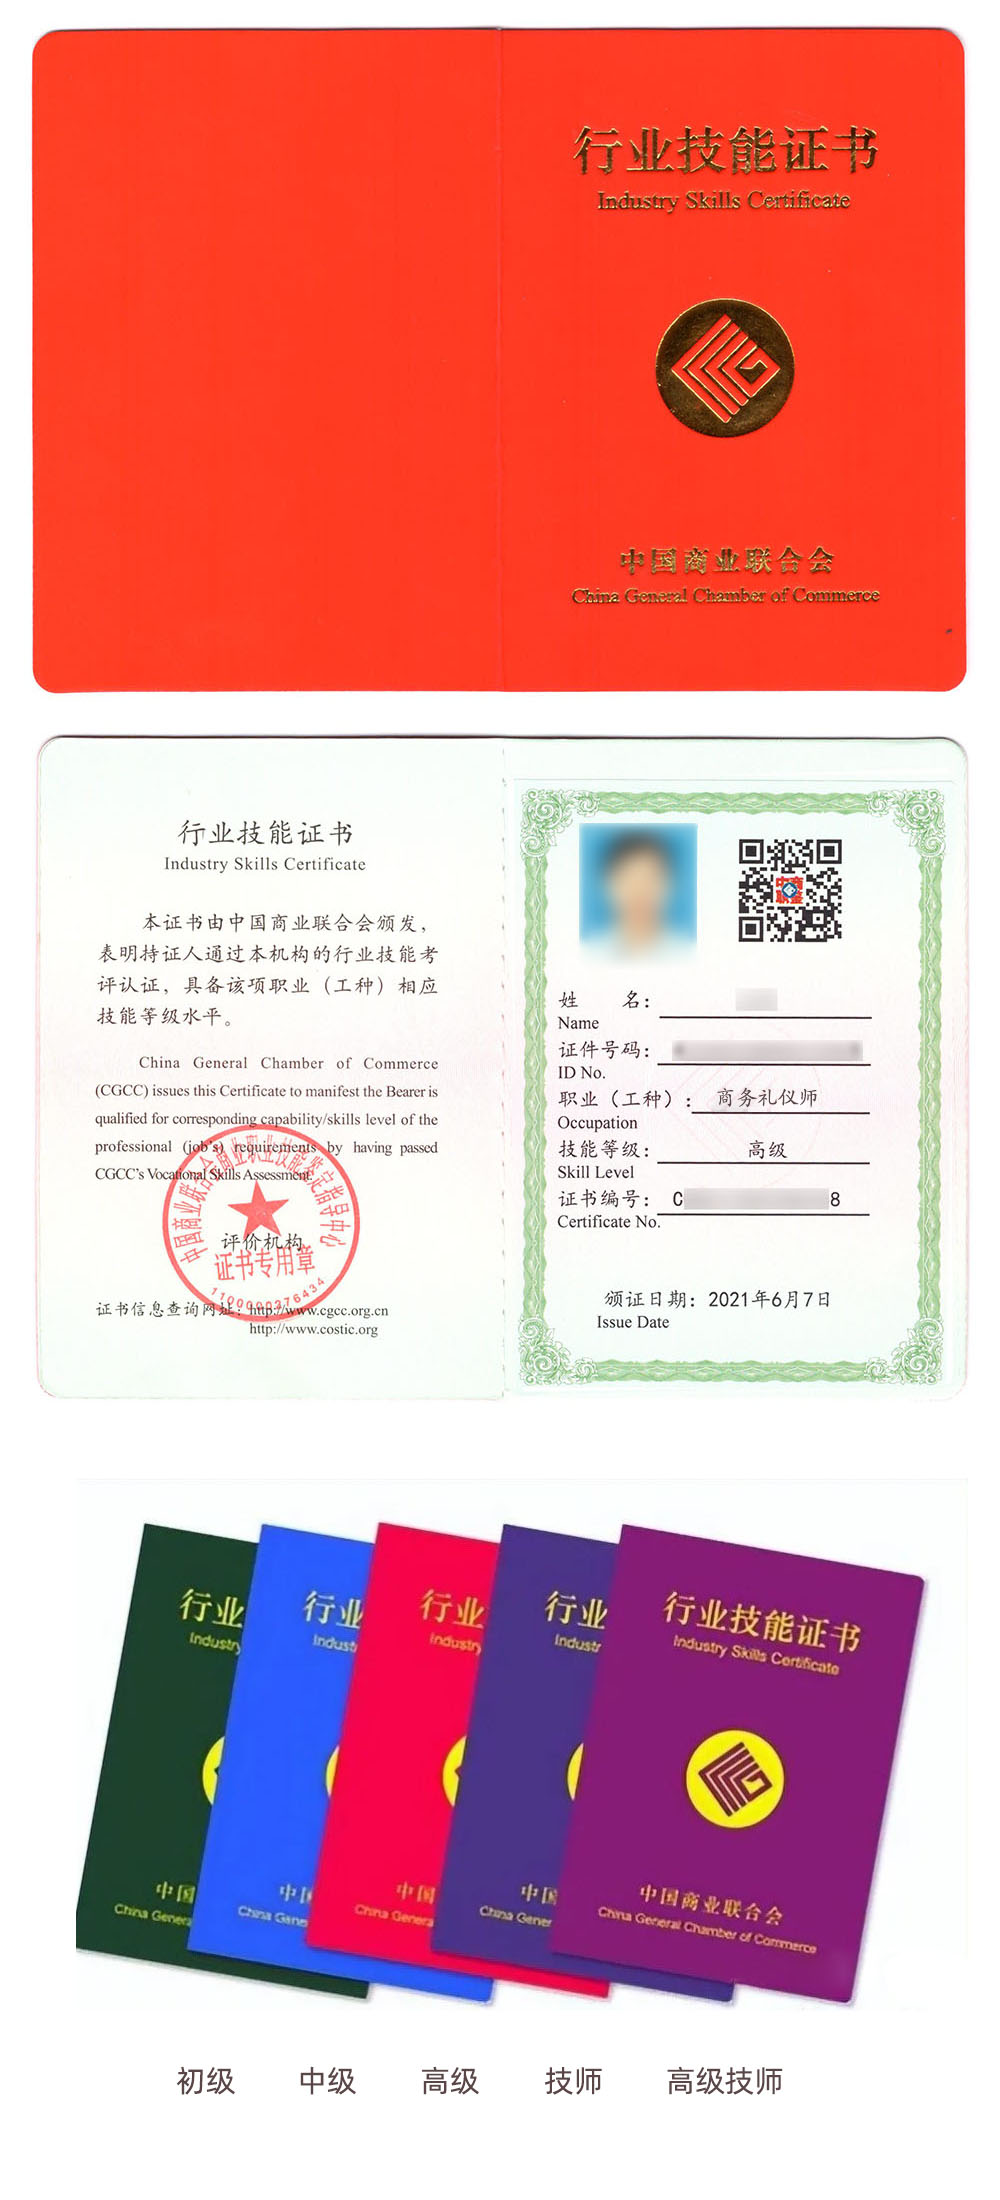 中国商业联合会商业职业技能鉴定指导中心 行业技能证书 商务礼仪师证证书样本